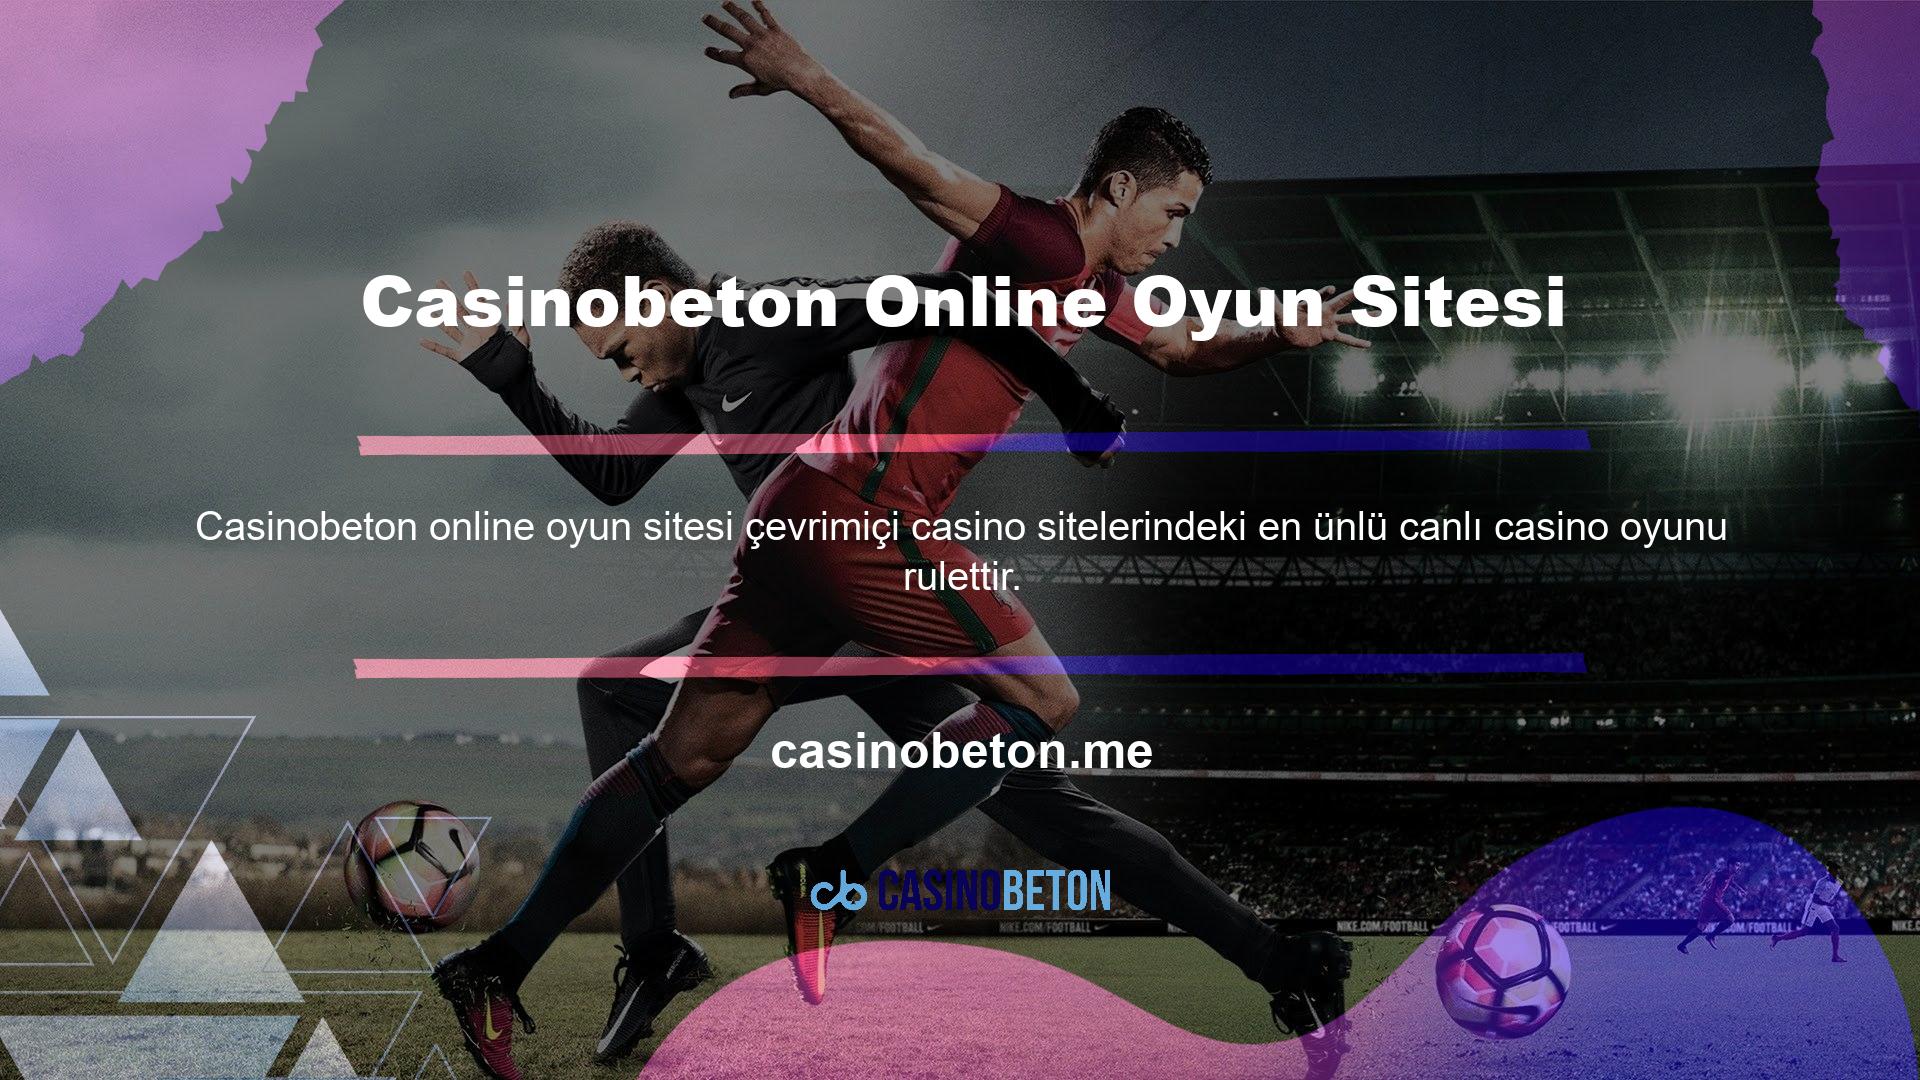 Casinobeton oyun siteleri, oyun hizmetlerinin ilk gününden beri rulet oyunları sunmaktadır